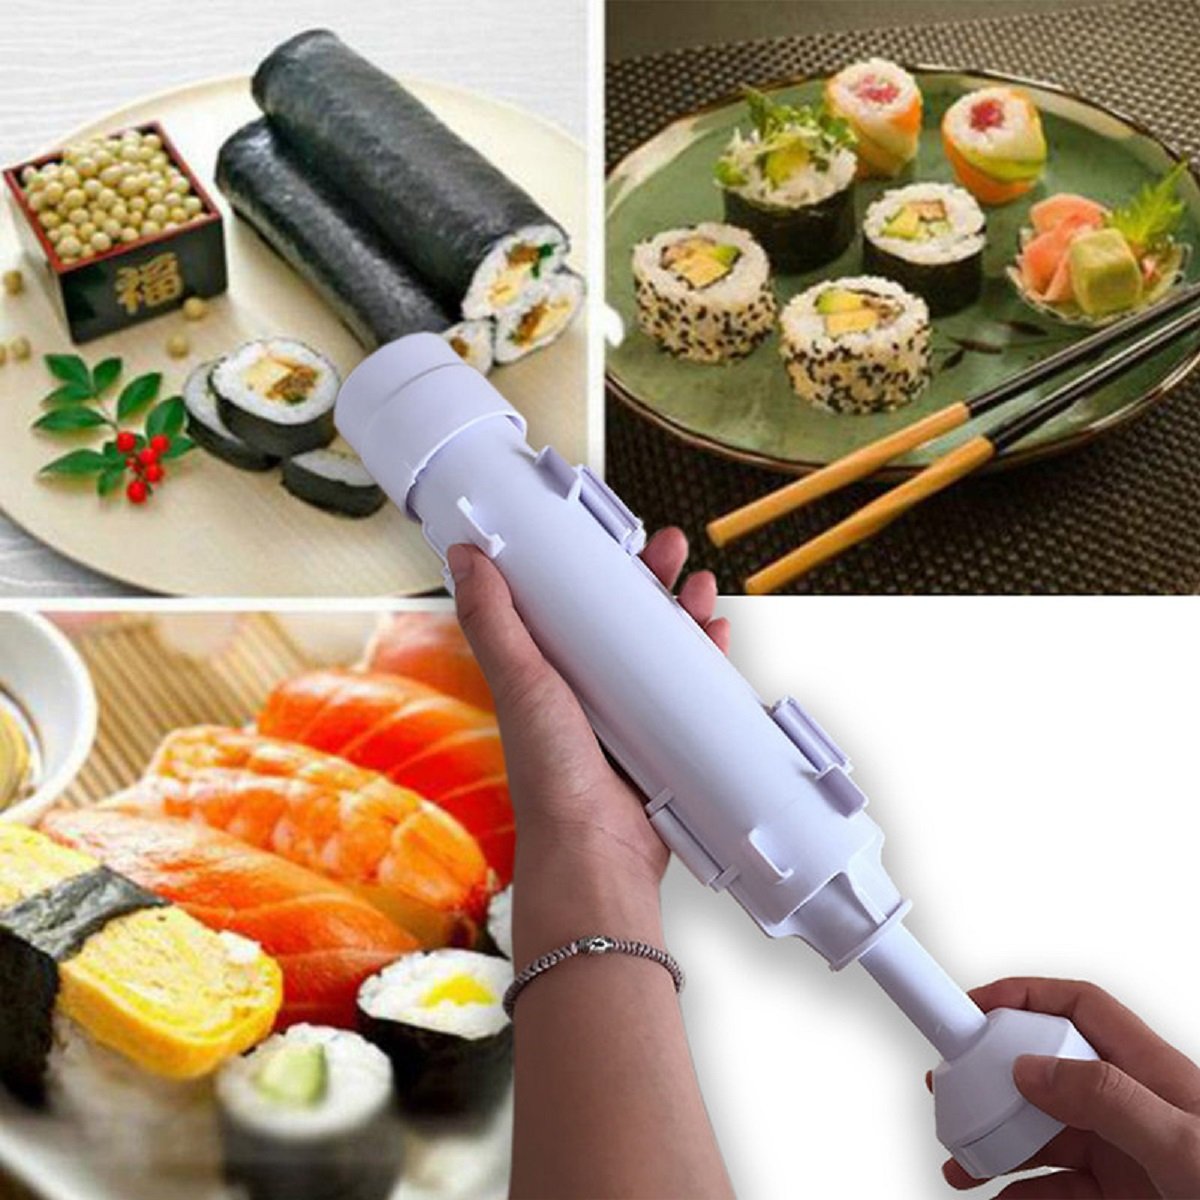 Sushi Making Tube Kit Machine Apparatus Rolling Rice Roller Mold DIY Maker  Tool